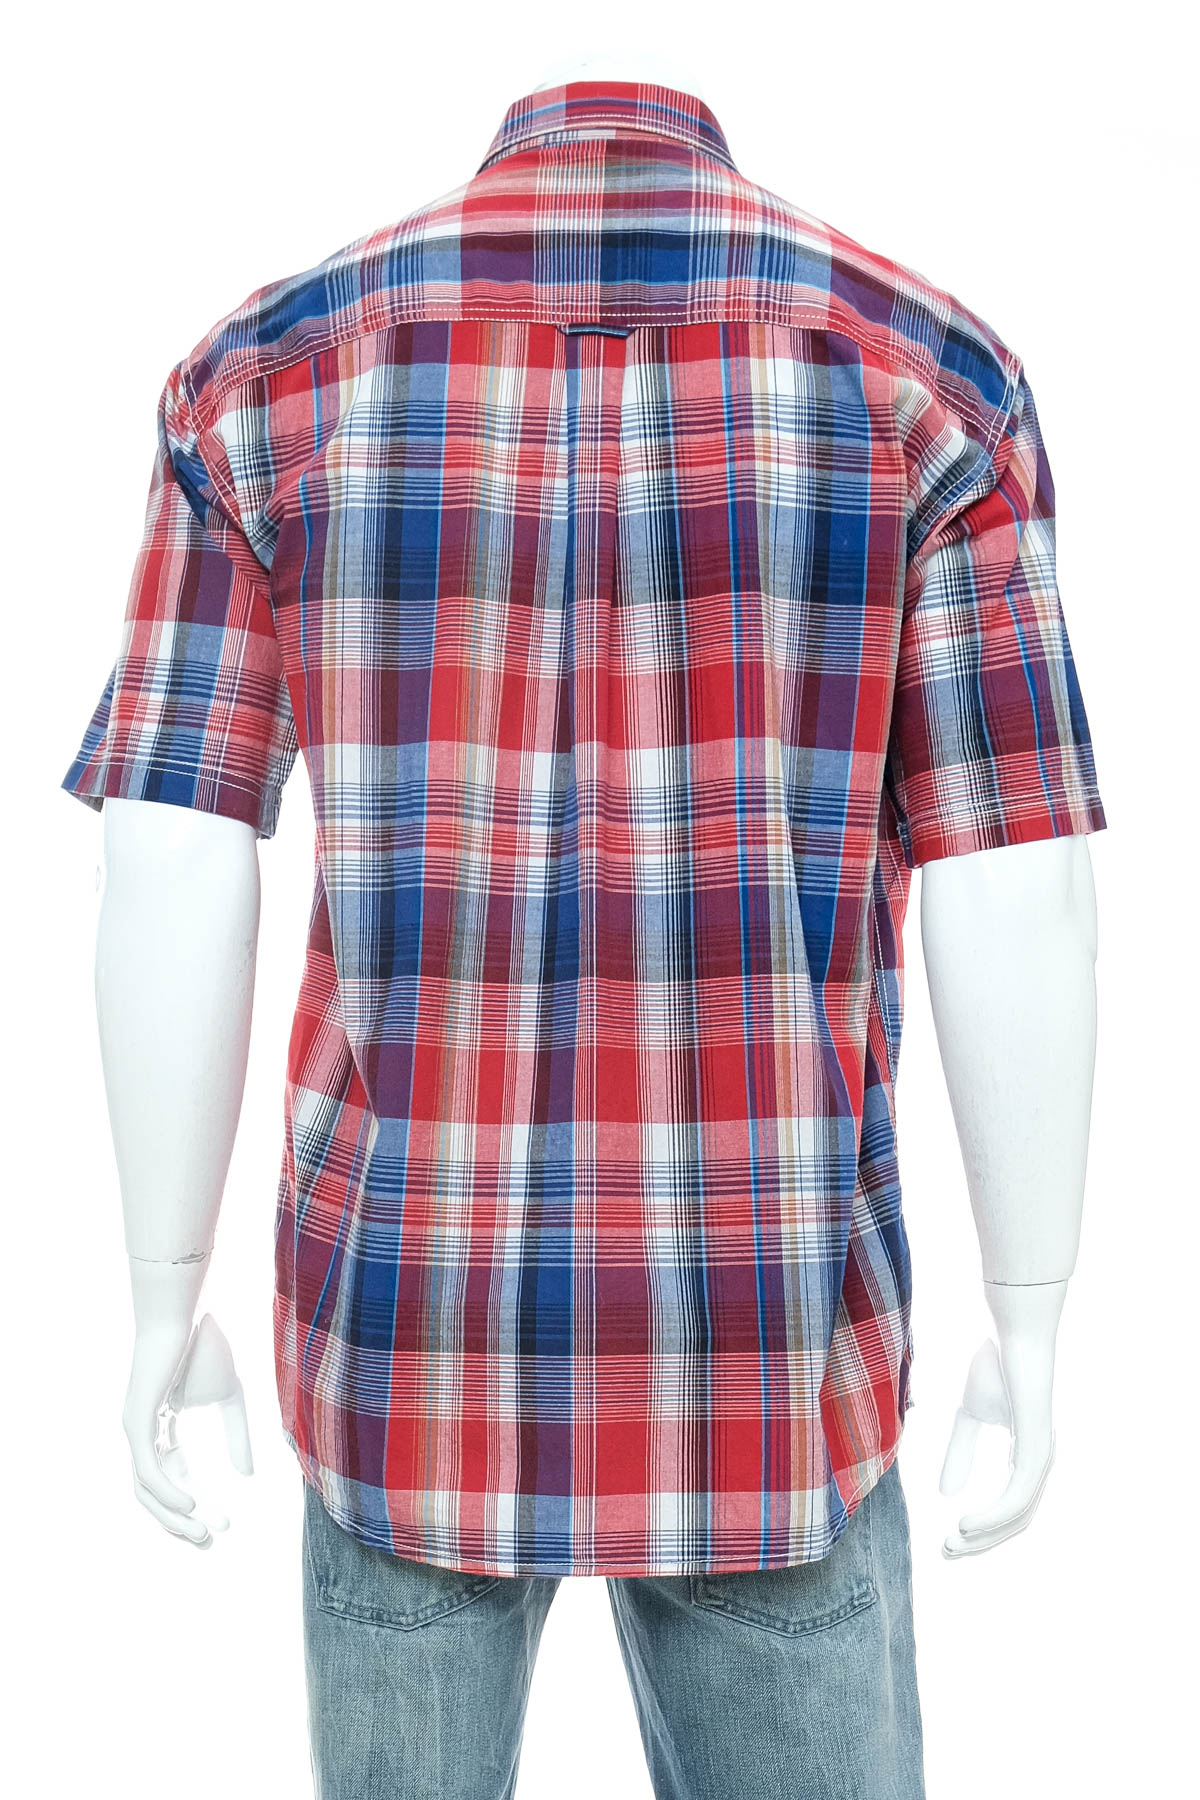 Ανδρικό πουκάμισο - Bygen Fashion - 1